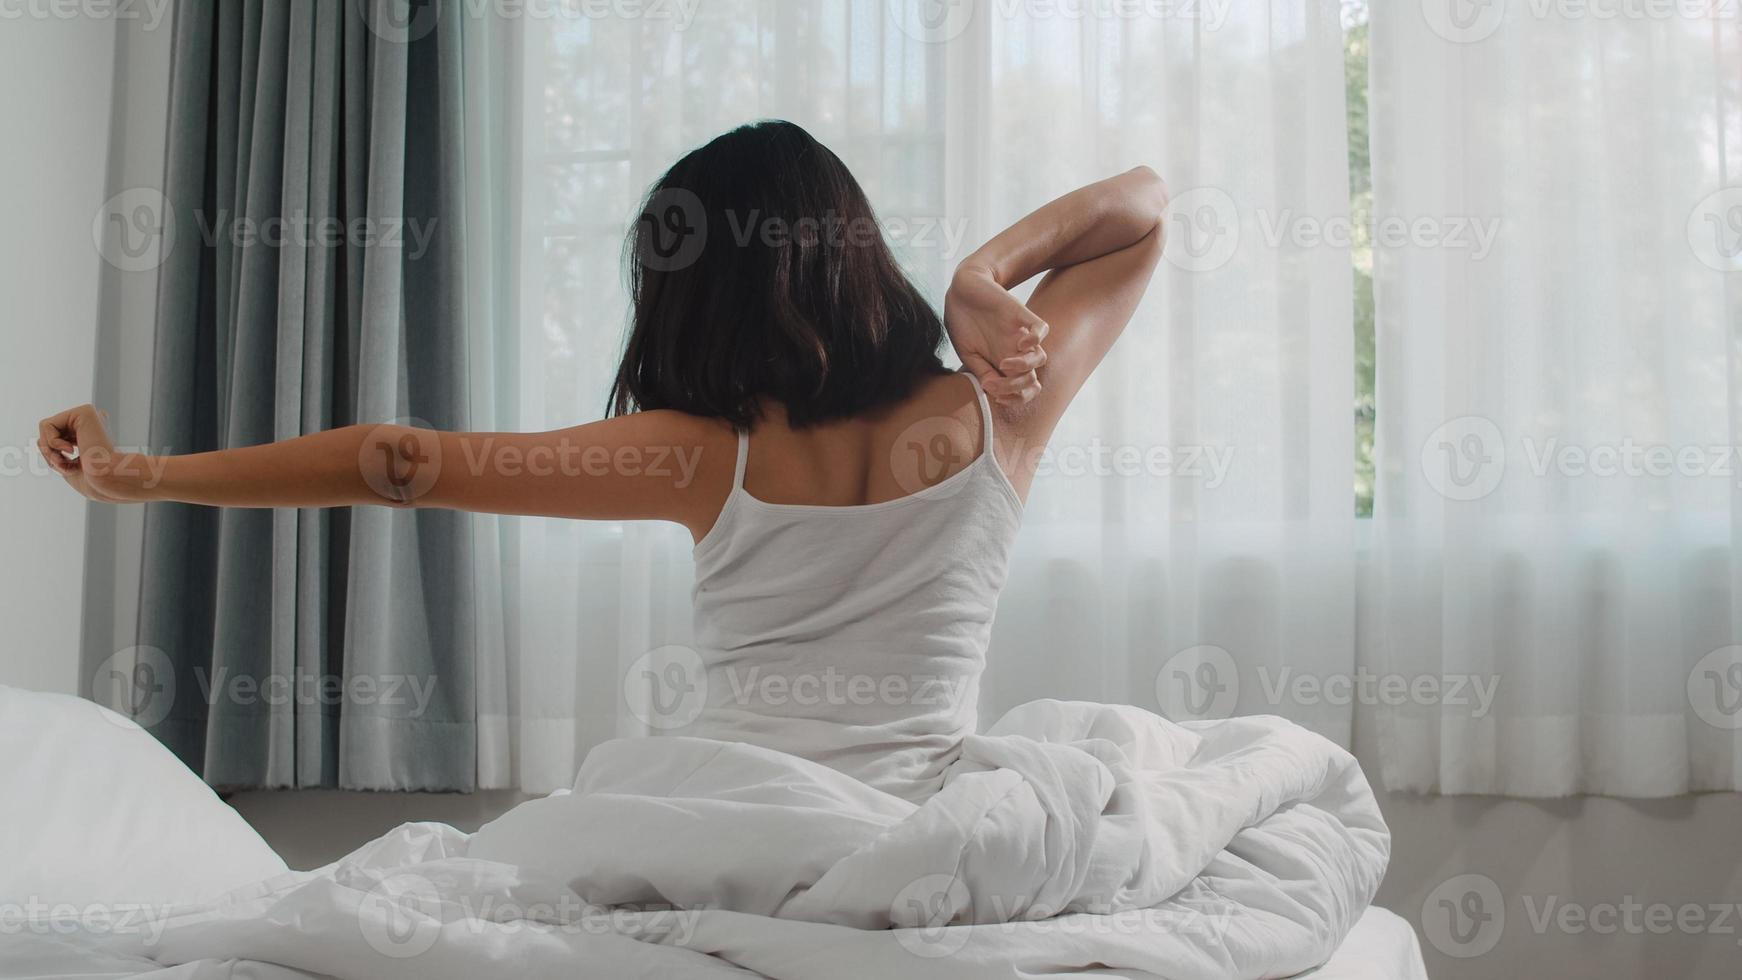 tonåring latinamerikansk kvinna vaknar hemma. ung asiatisk flicka stretching efter vaken sömn hela natten starta en ny dag med energi och vitalitet kände sig mycket utvilad på sängen nära fönstret i sovrummet på morgonen. foto